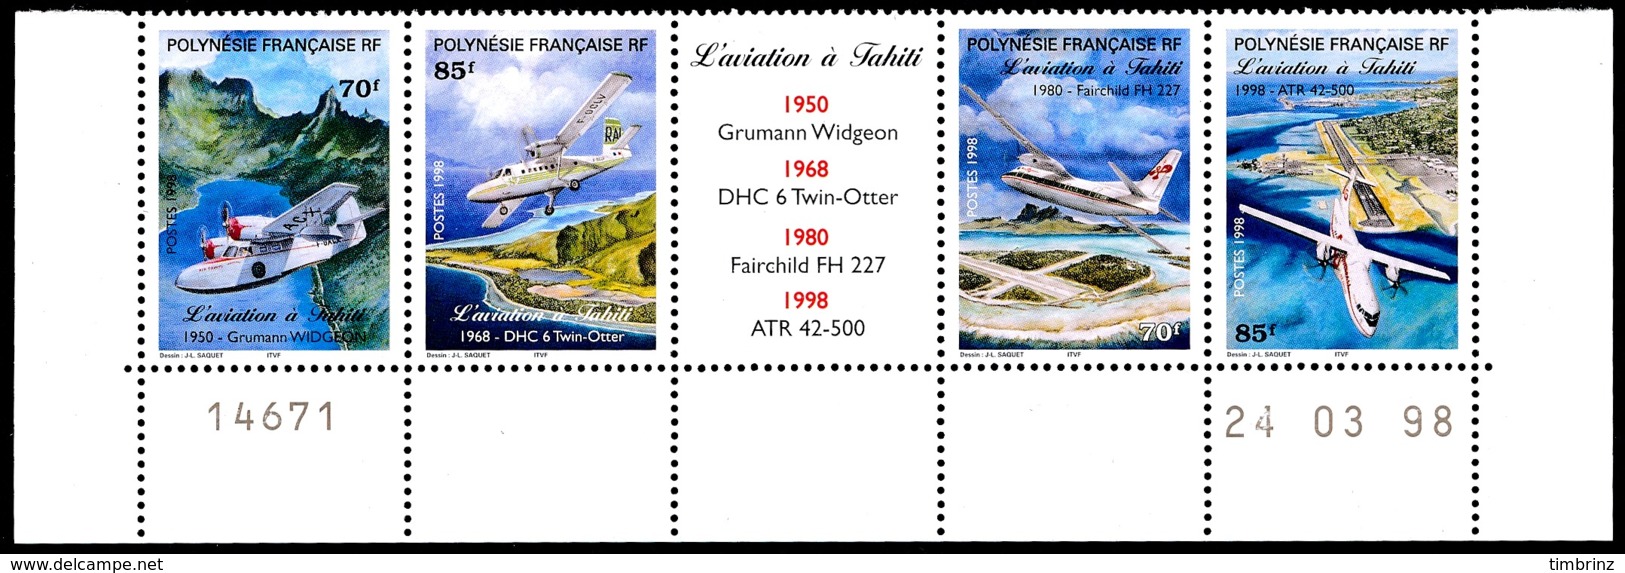 POLYNESIE 1998 - Yv. 556 à 559 ** Bas De Feuille Daté  Faciale= 2,60 EUR - Aviation à Tahiti (4 Val.)  ..Réf.POL24126 - Ungebraucht